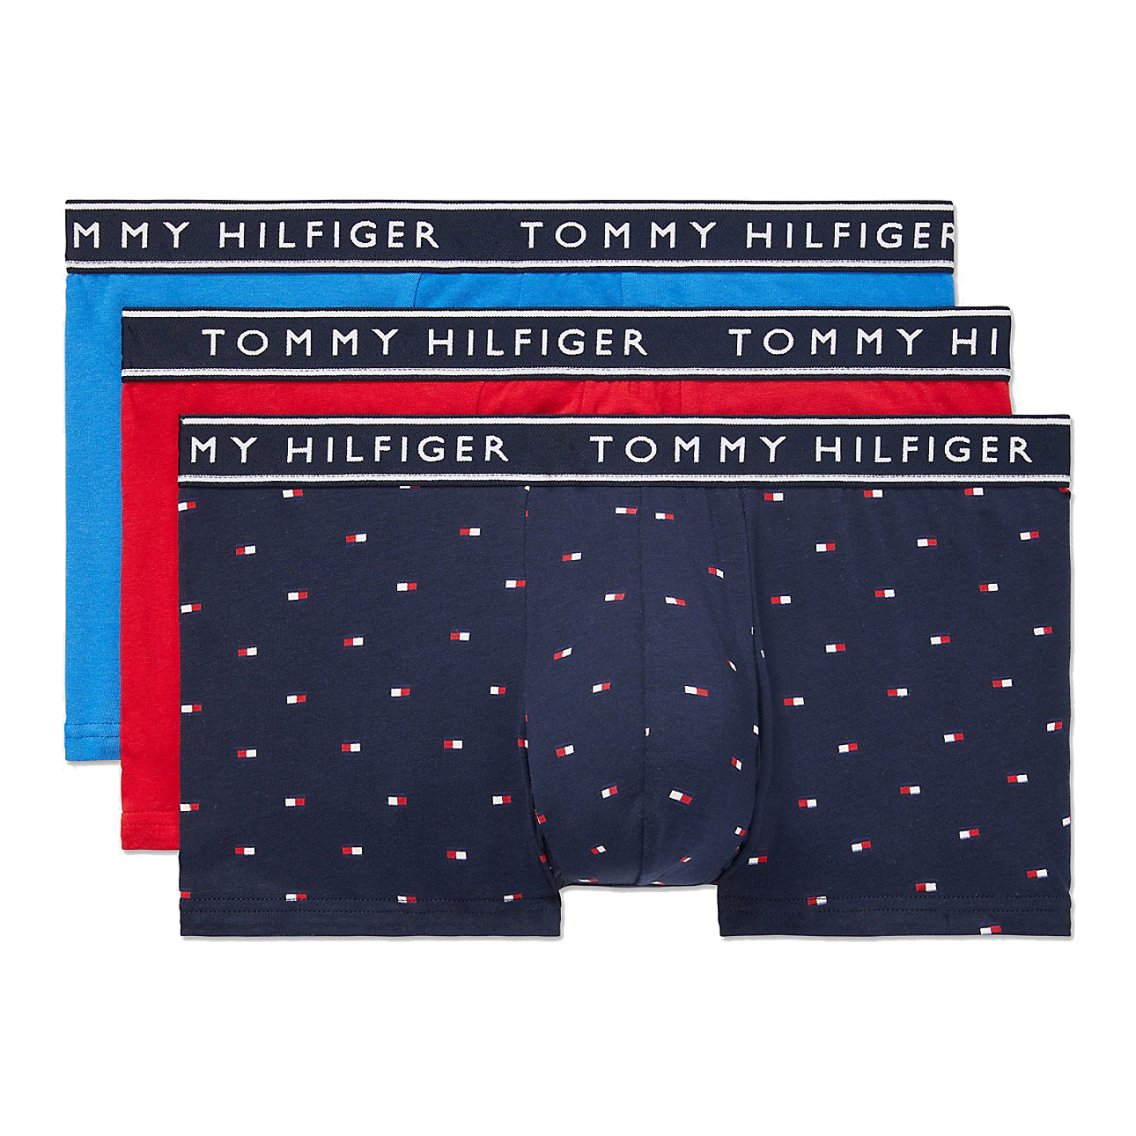 TOMMY HILFIGER(トミーヒルフィガー)[09T4225-413]:ボクサーパンツ